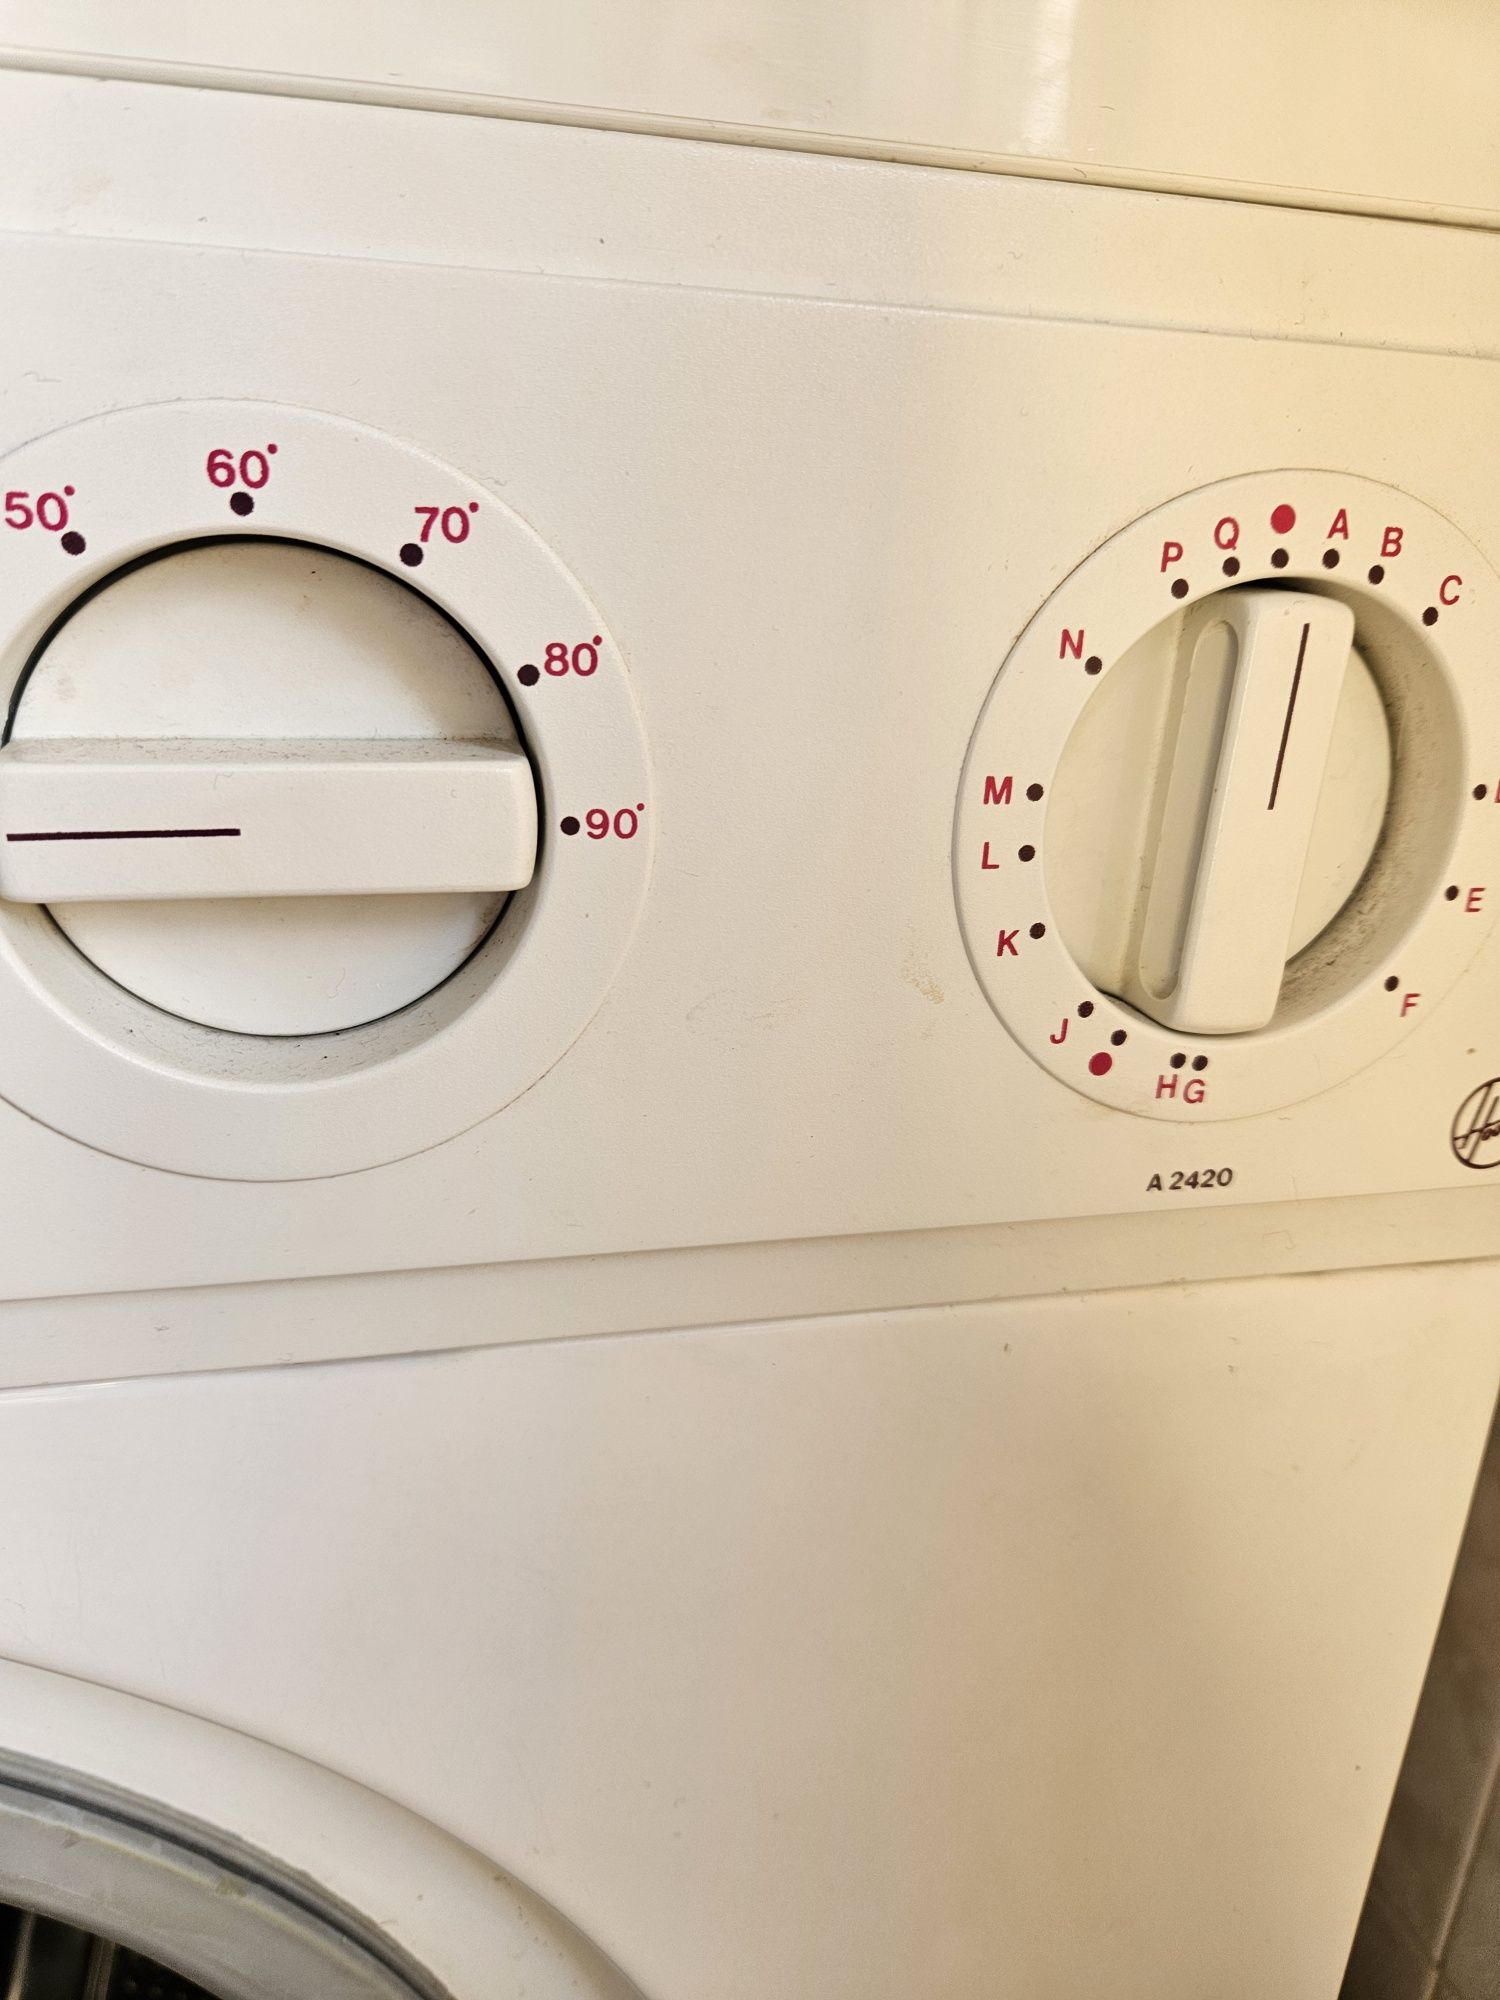 Hoover Maquina lavar roupa A2420 para peças